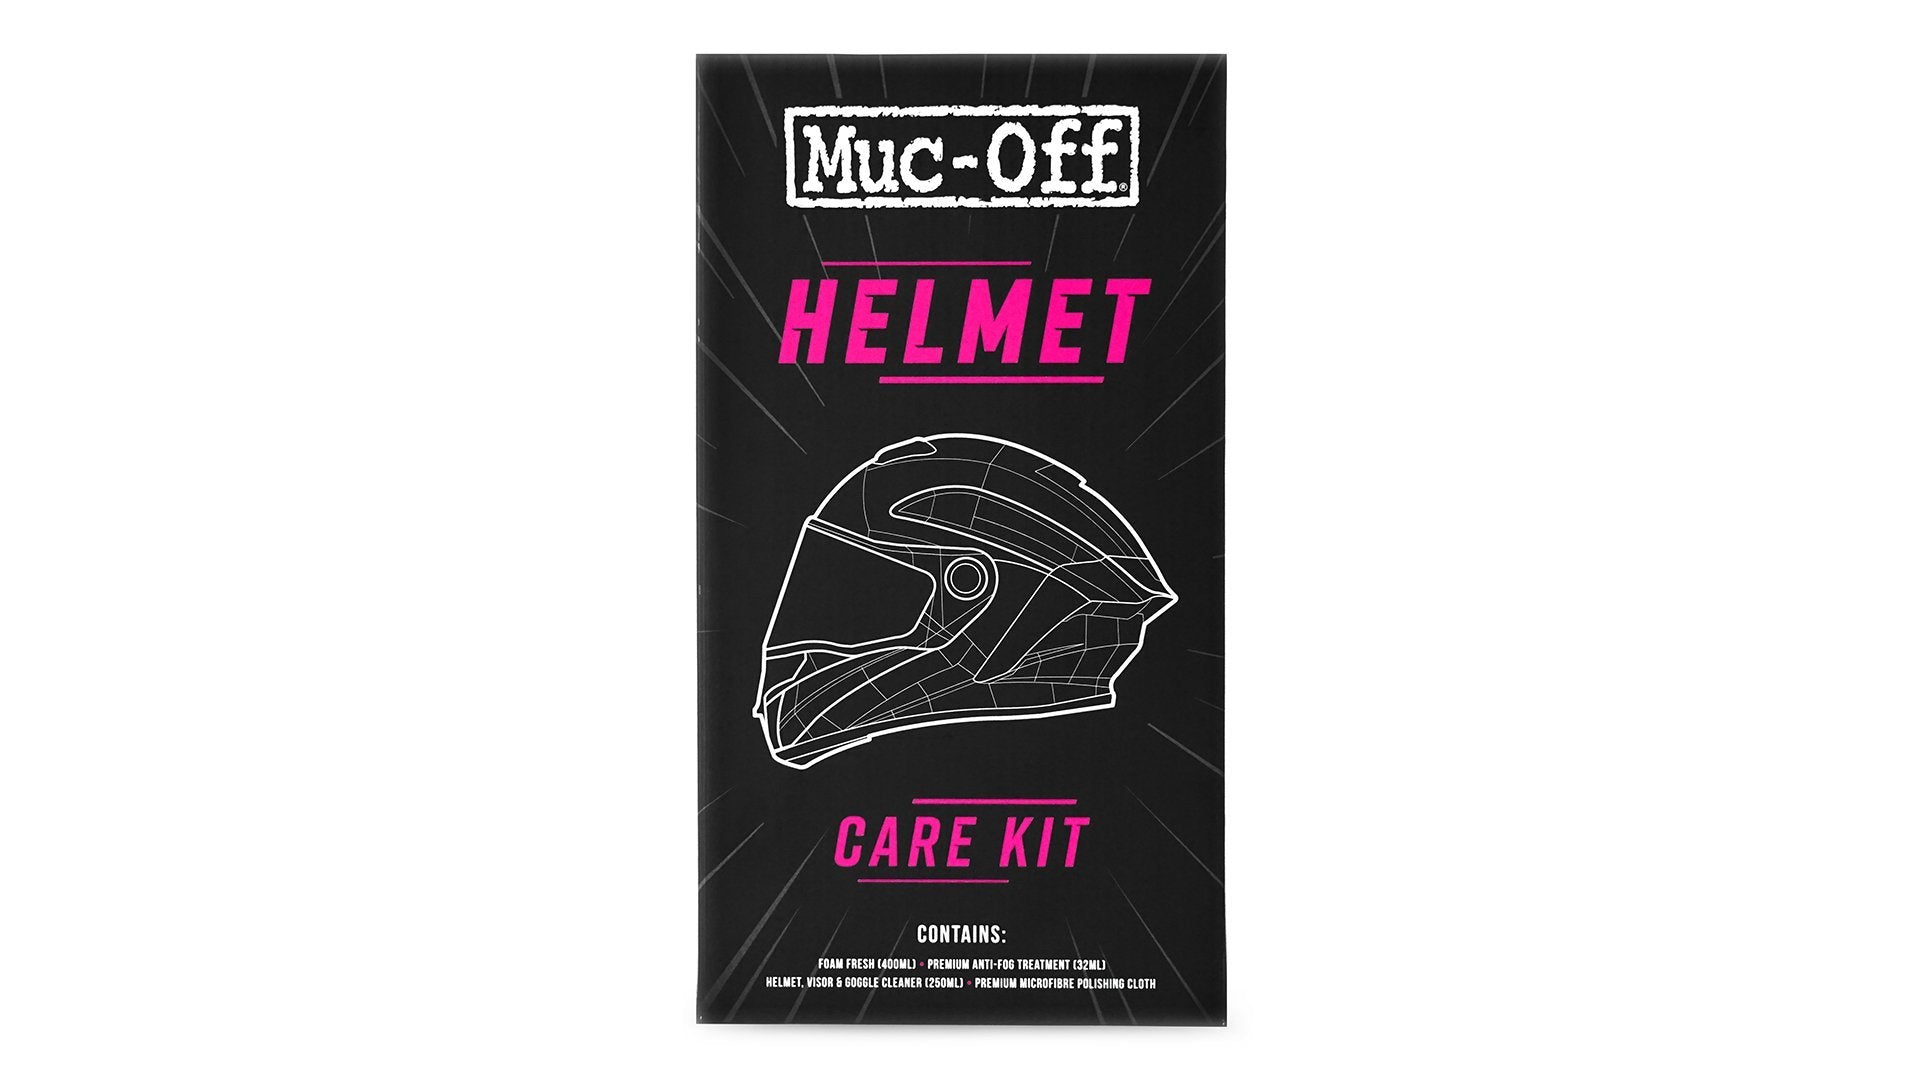 Helmet Care Kit - Muc-Off